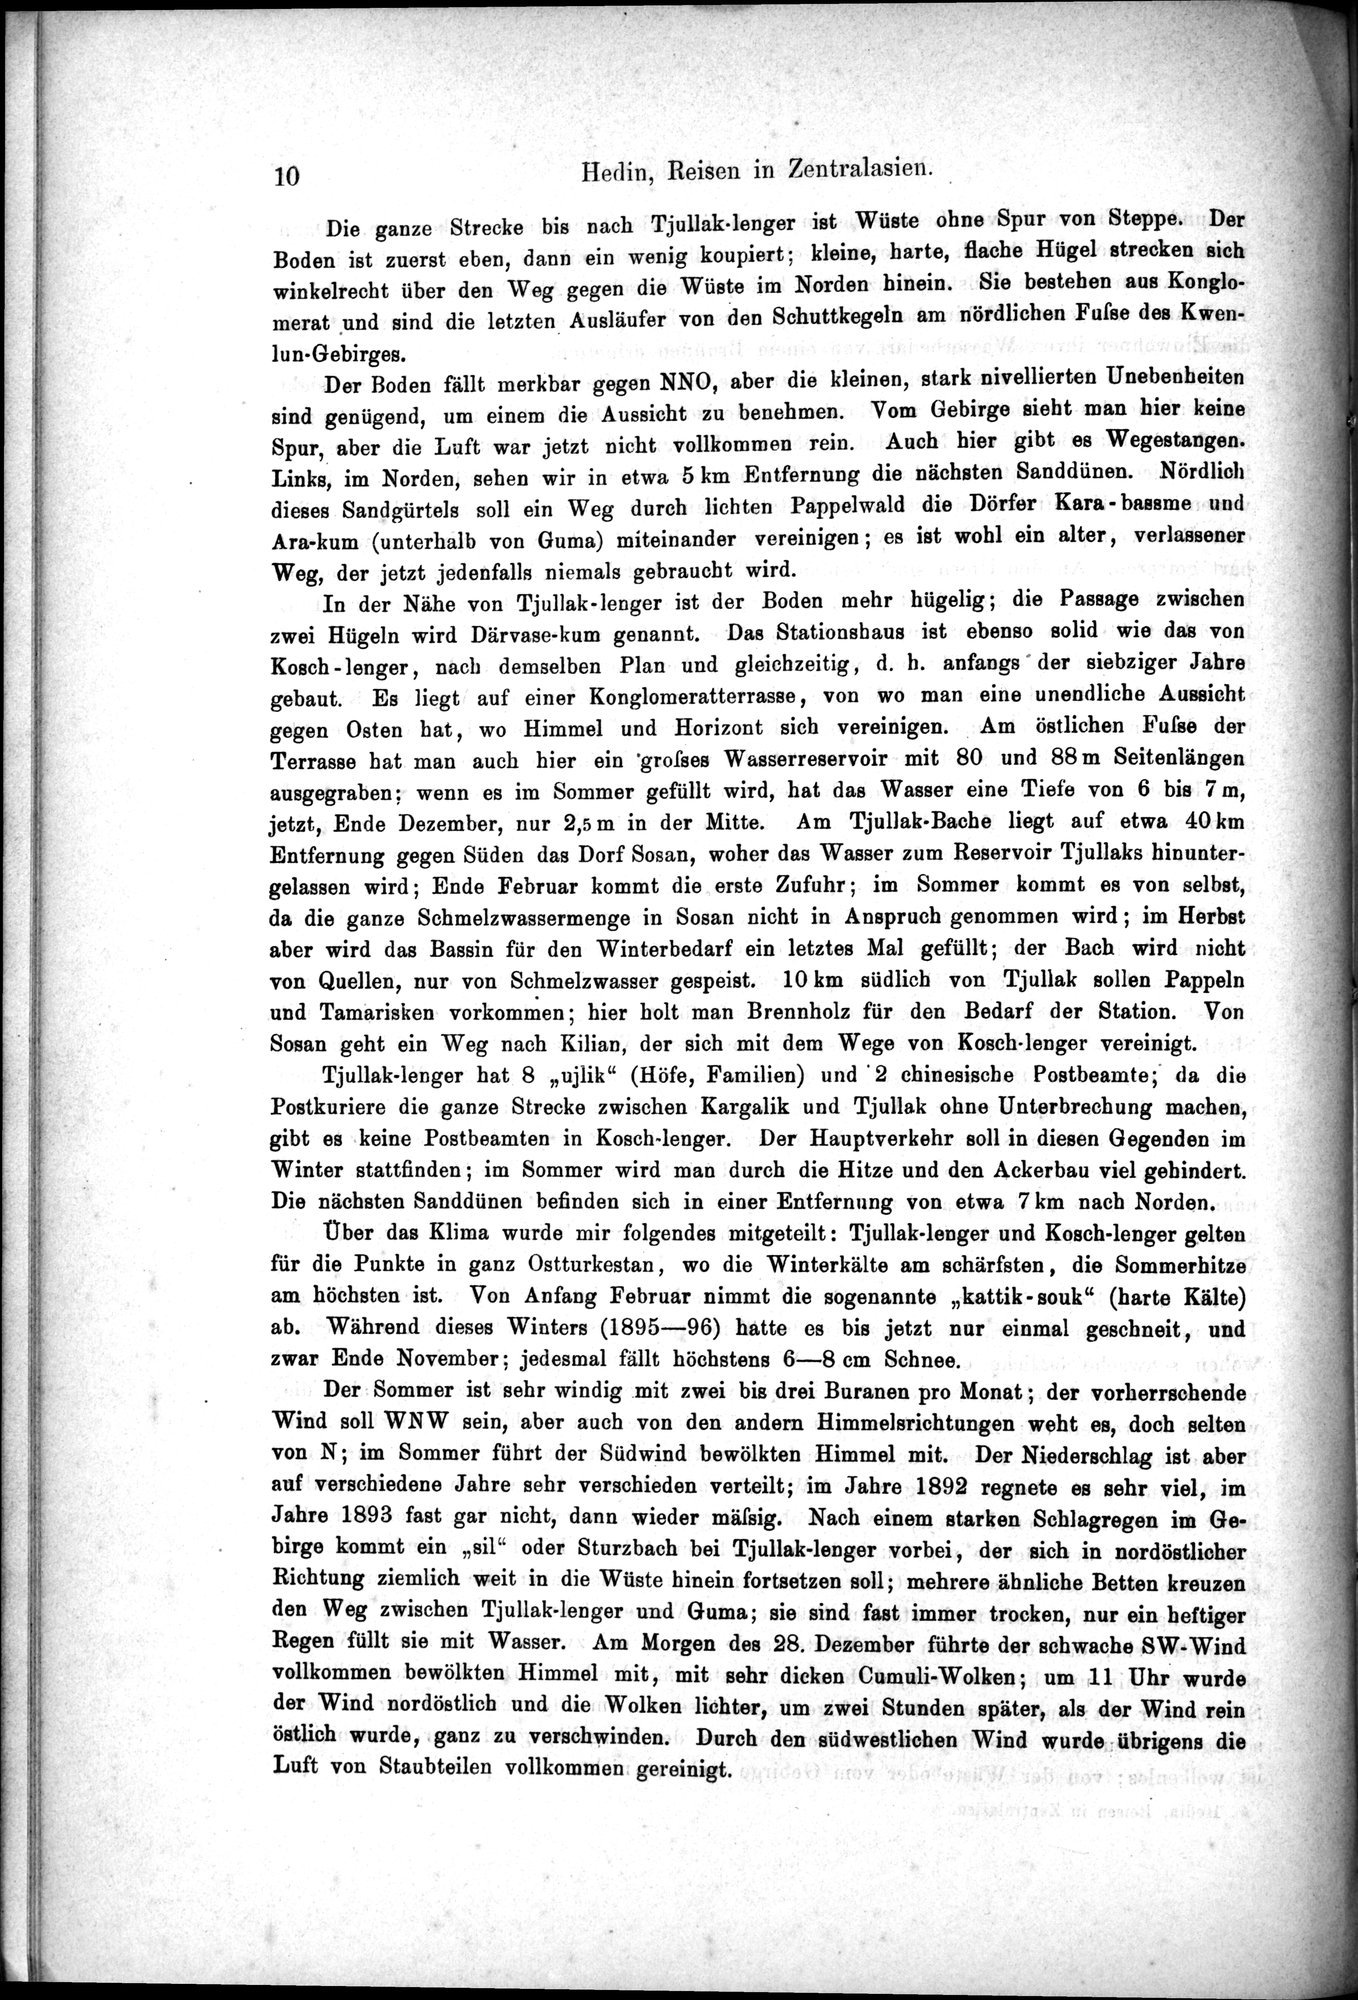 Die Geographische-Wissenschaftlichen Ergebnisse meiner Reisen in Zentralasien, 1894-1897 : vol.1 / Page 22 (Grayscale High Resolution Image)